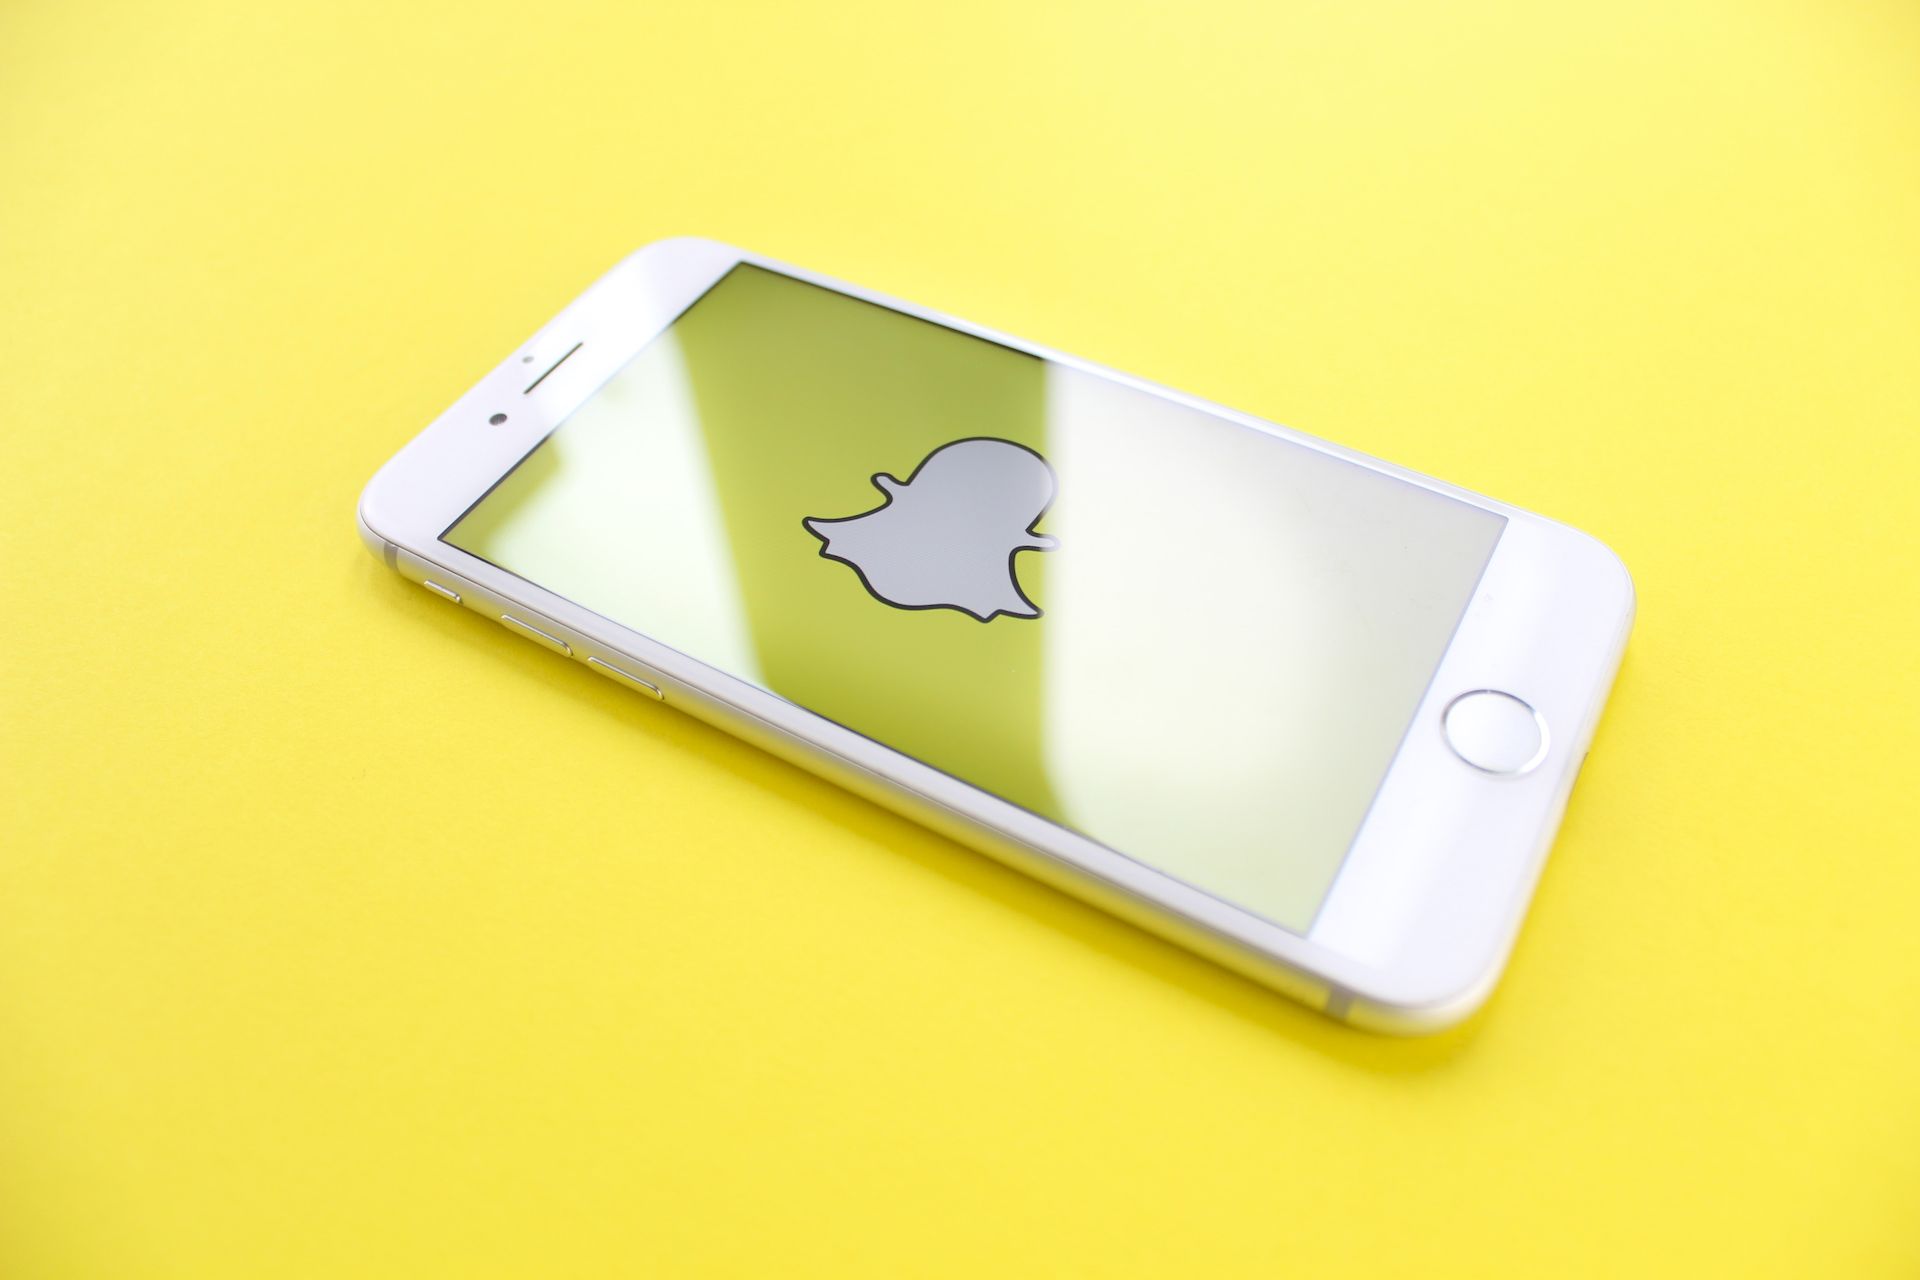 Rehber: Snapchat 2022 özeti görüntüleme